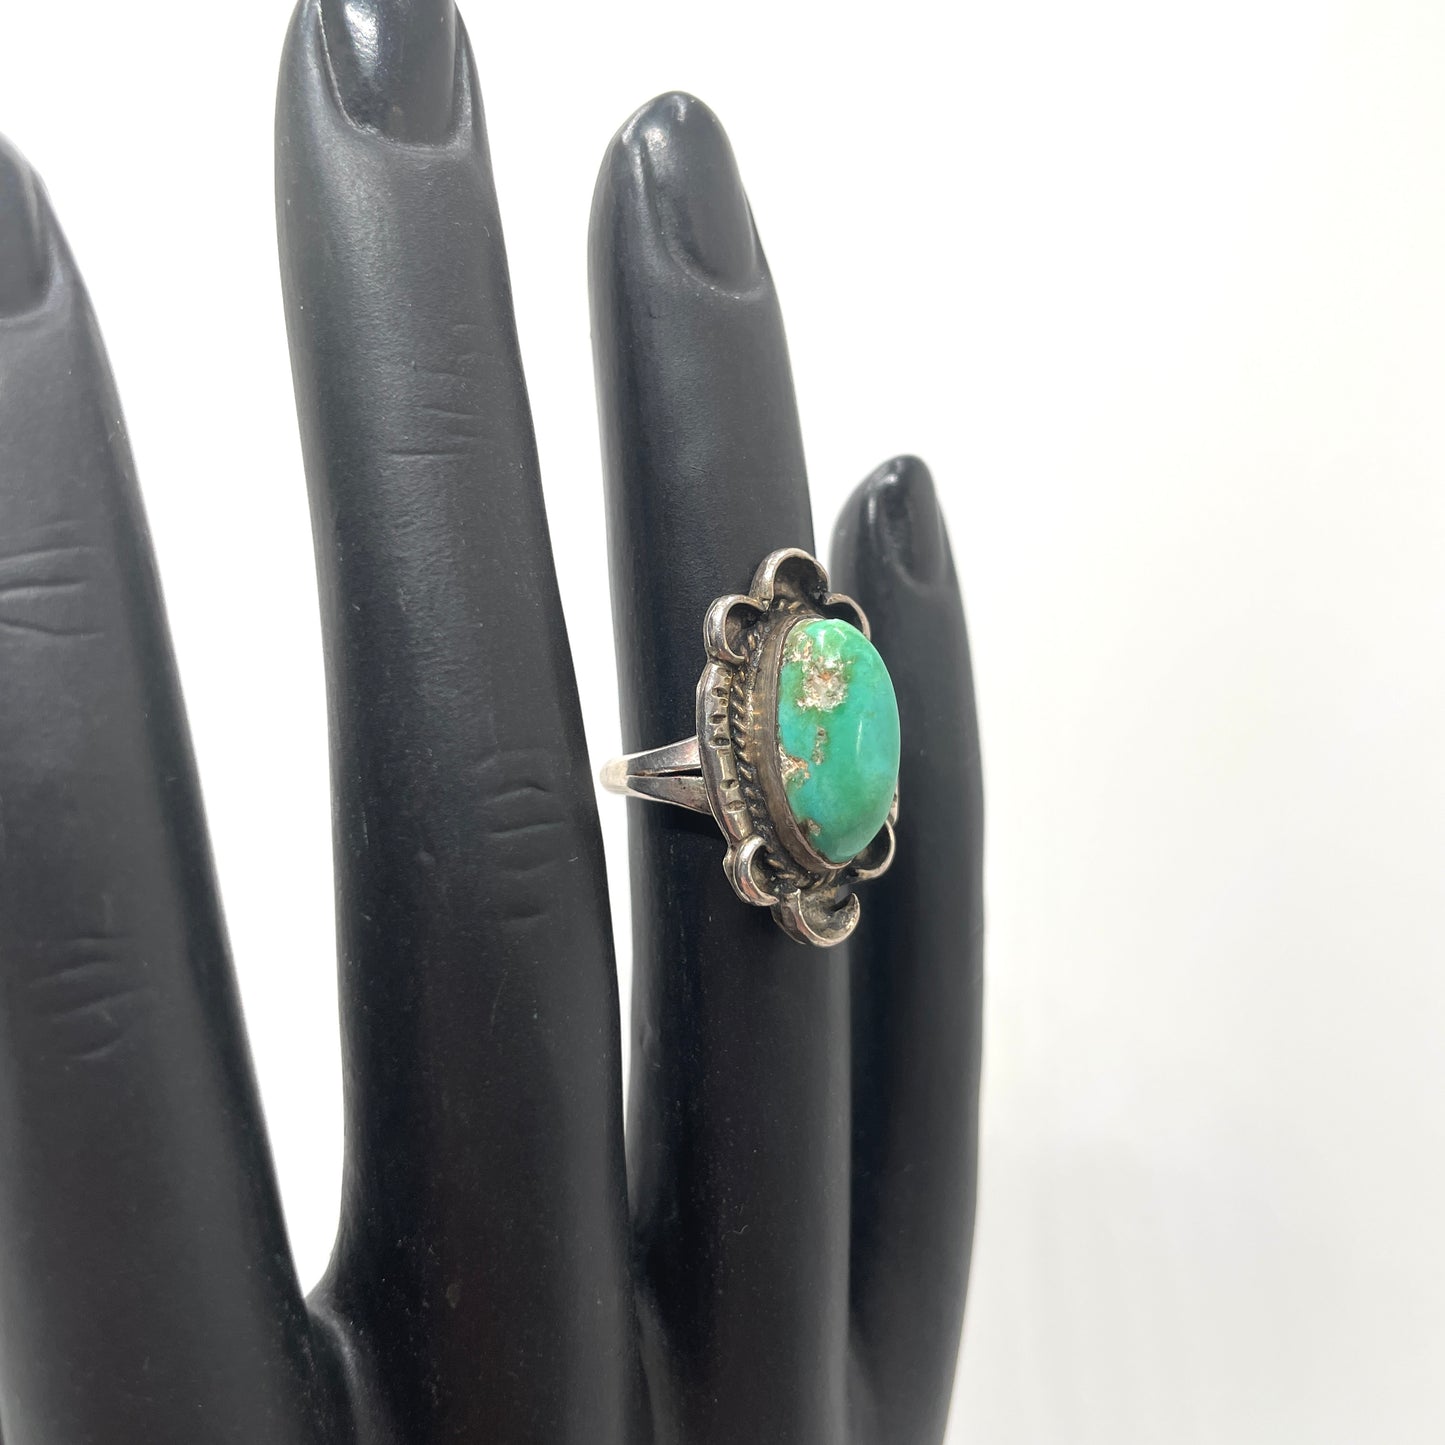 Vintage Turquoise Artisan Ring - Size 5